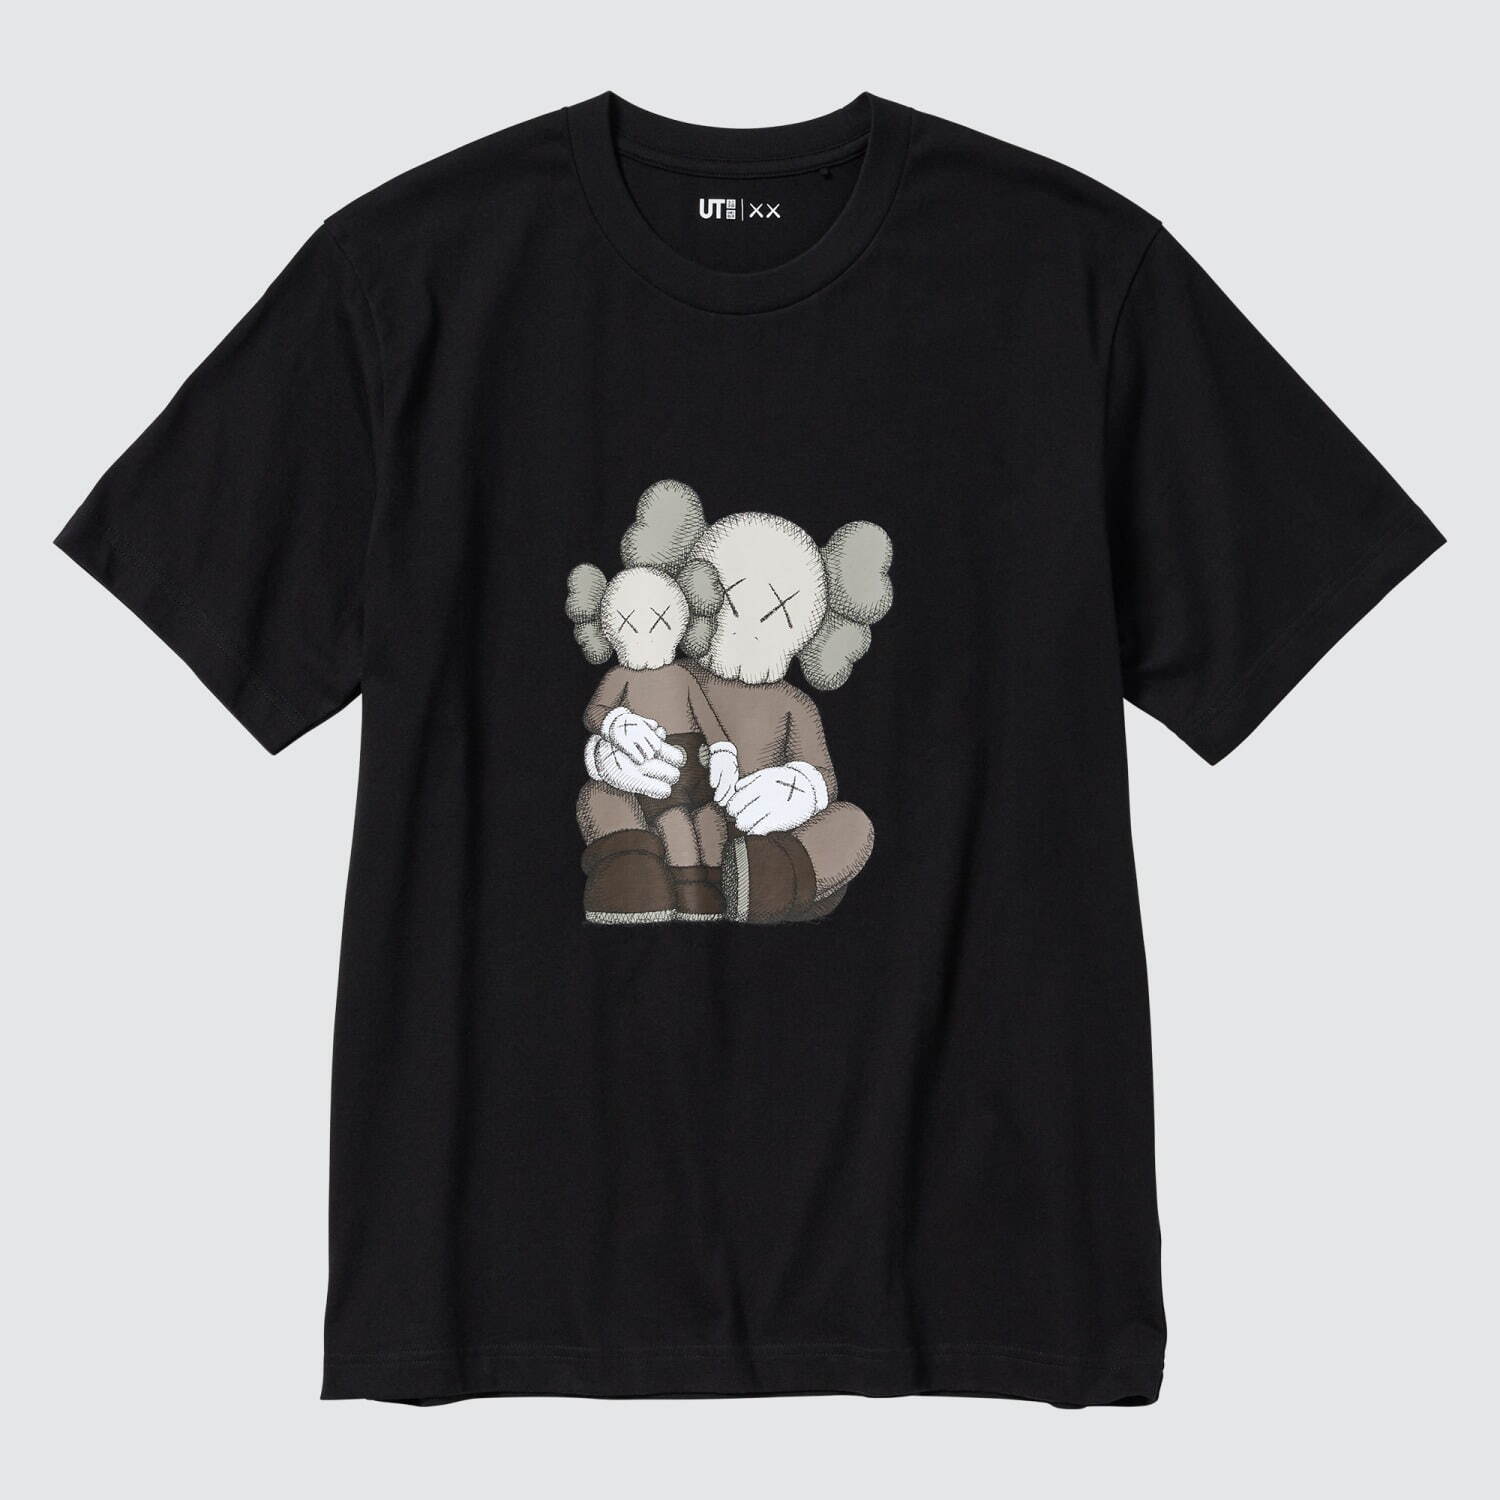 ユニクロ「UT」KAWSコラボ - “××”モチーフのTシャツやスウェット